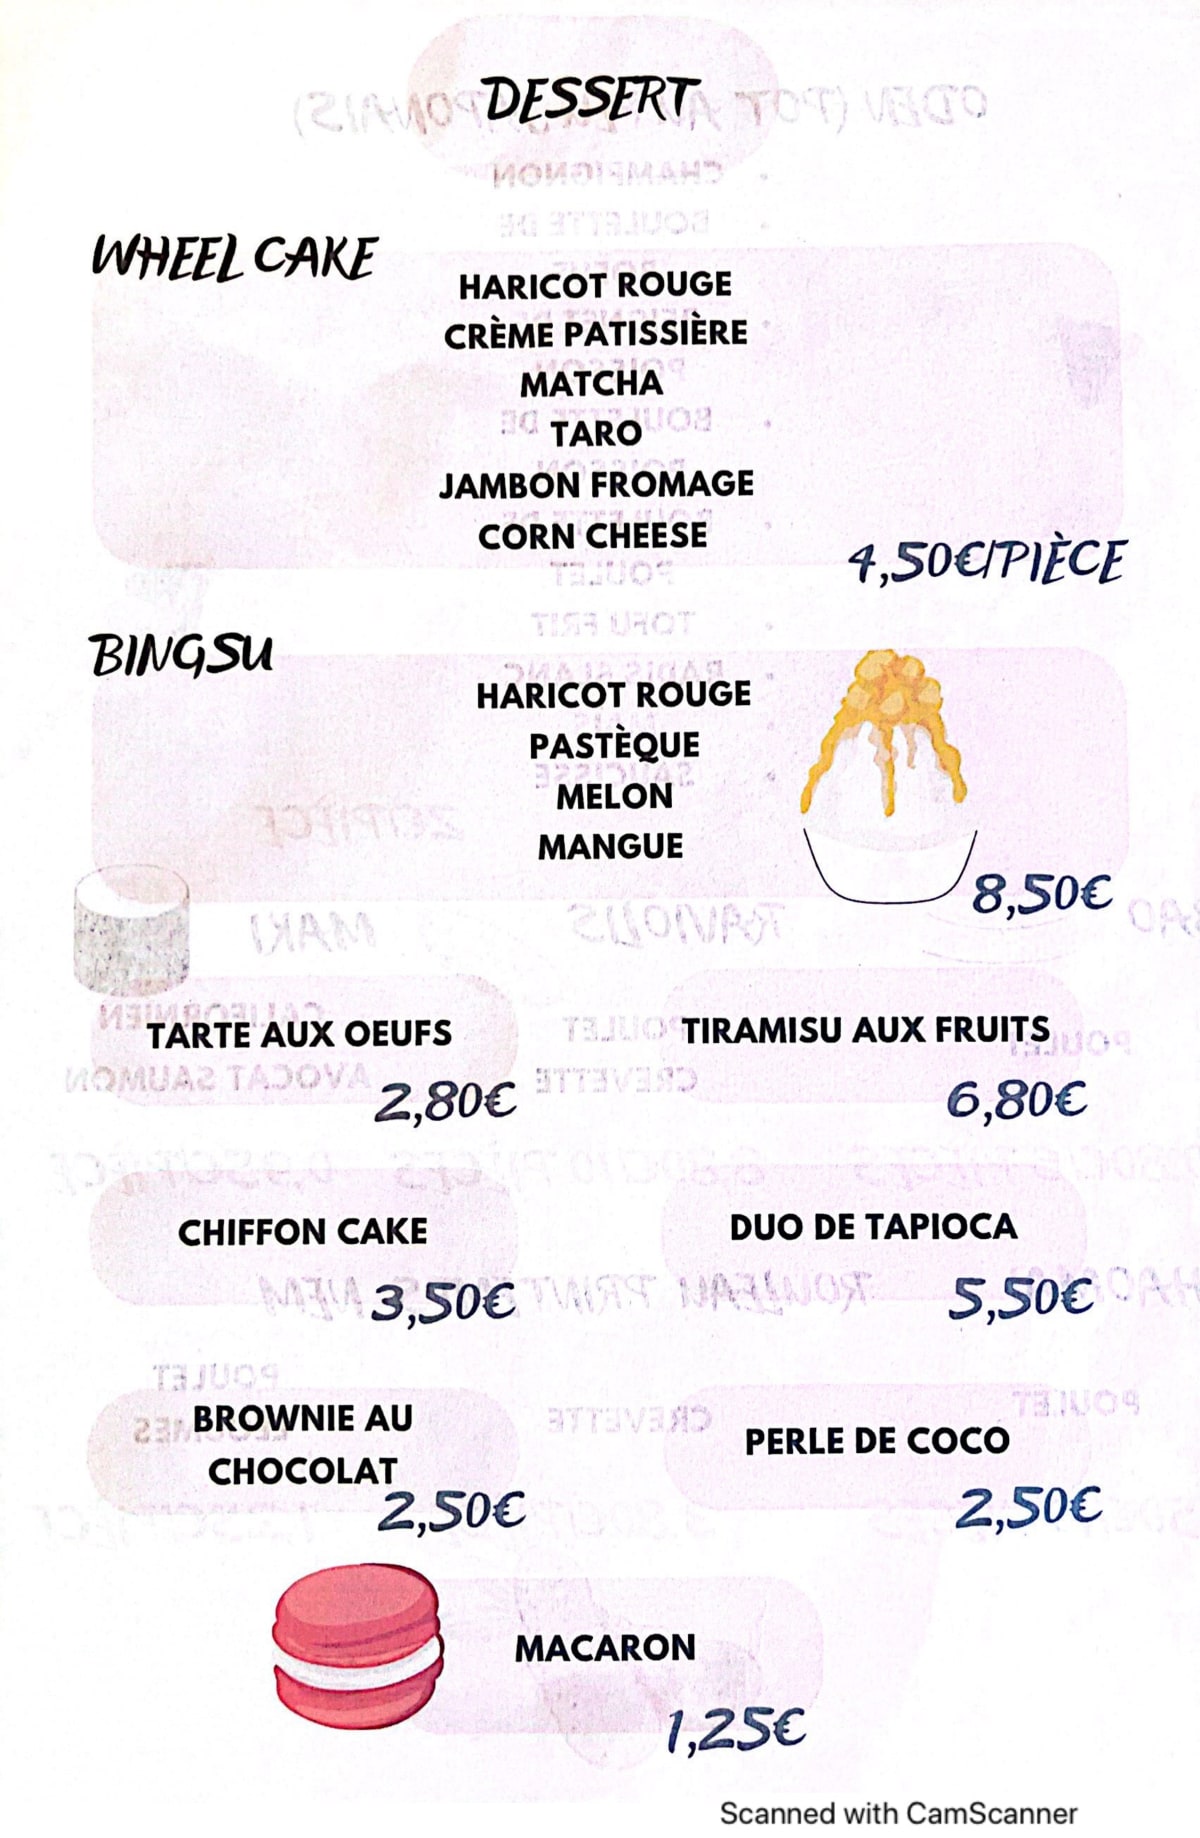 POKITIME menu